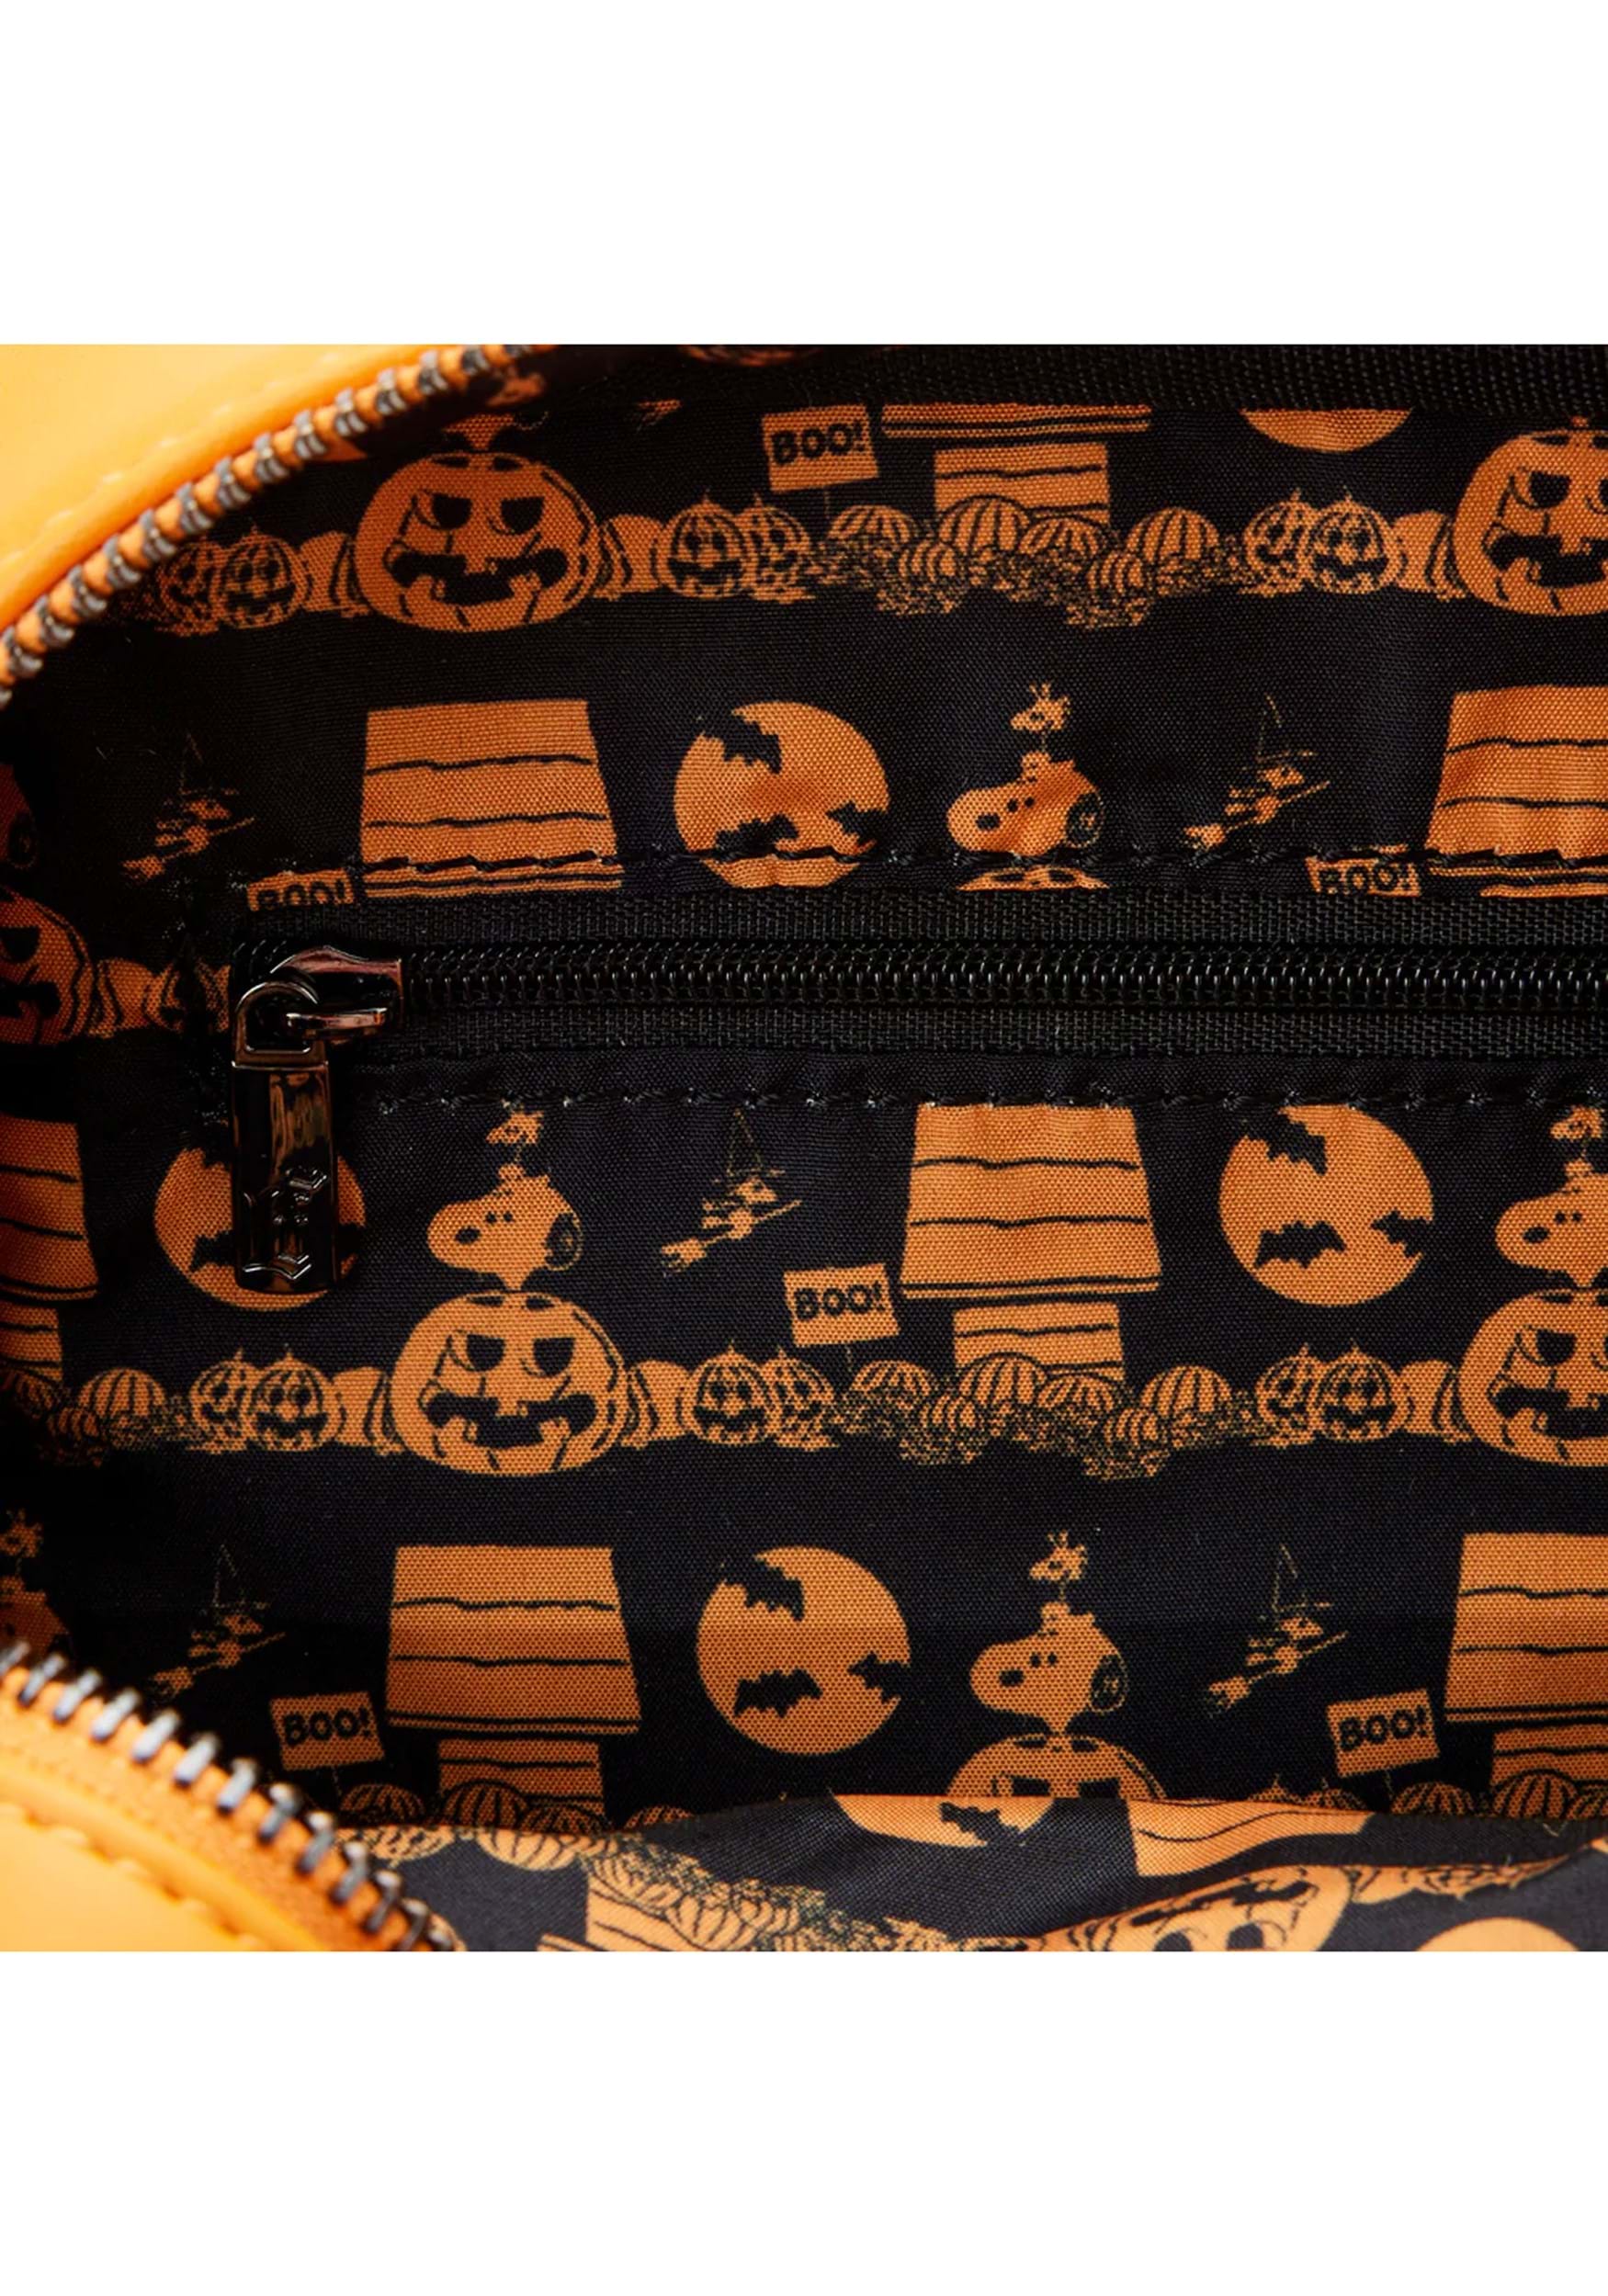 Peanuts Great Pumpkin Snoopy Mini Backpack